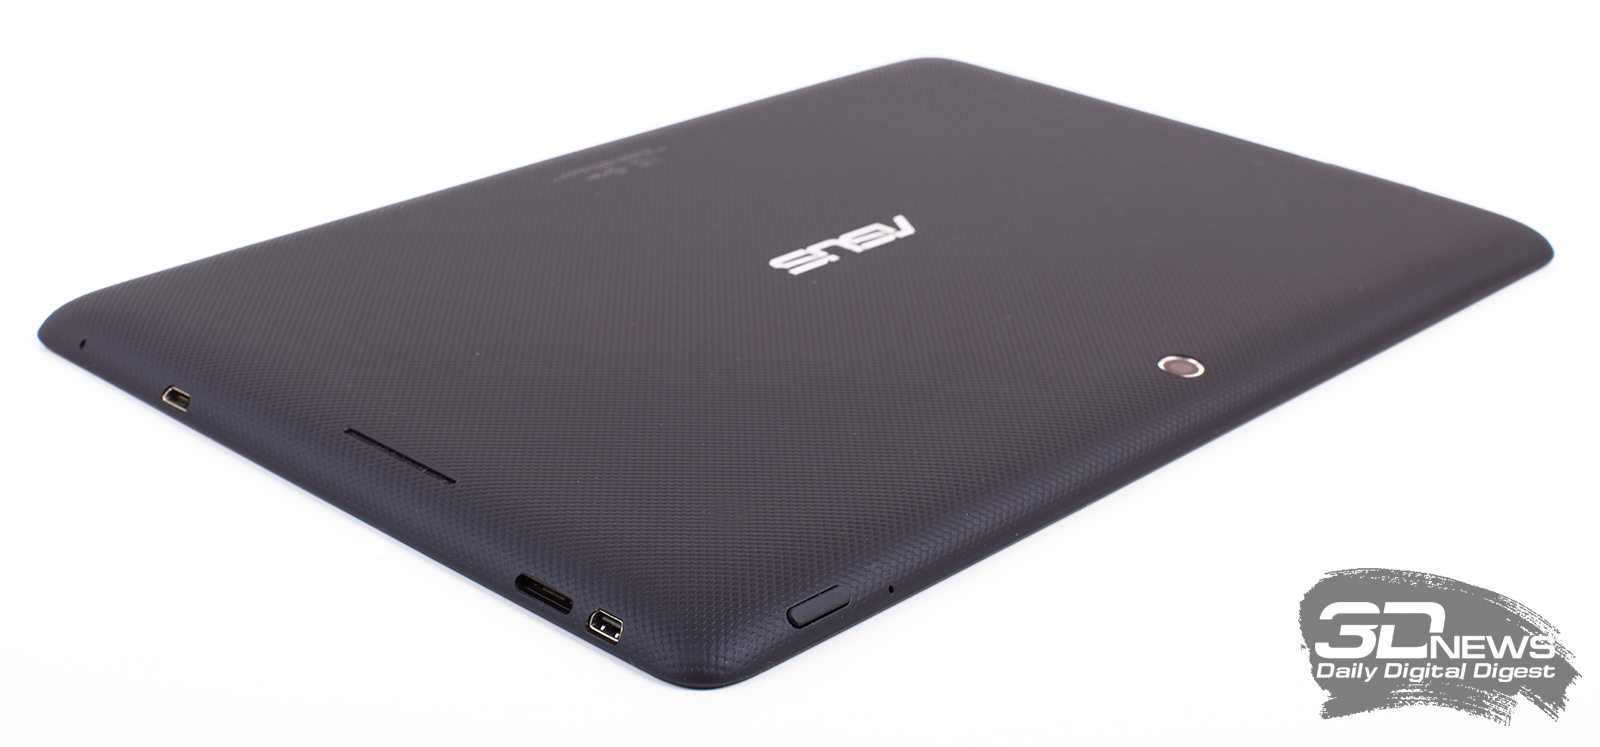 Планшет asus memo pad 7 16 гб wifi золотистый — купить, цена и характеристики, отзывы